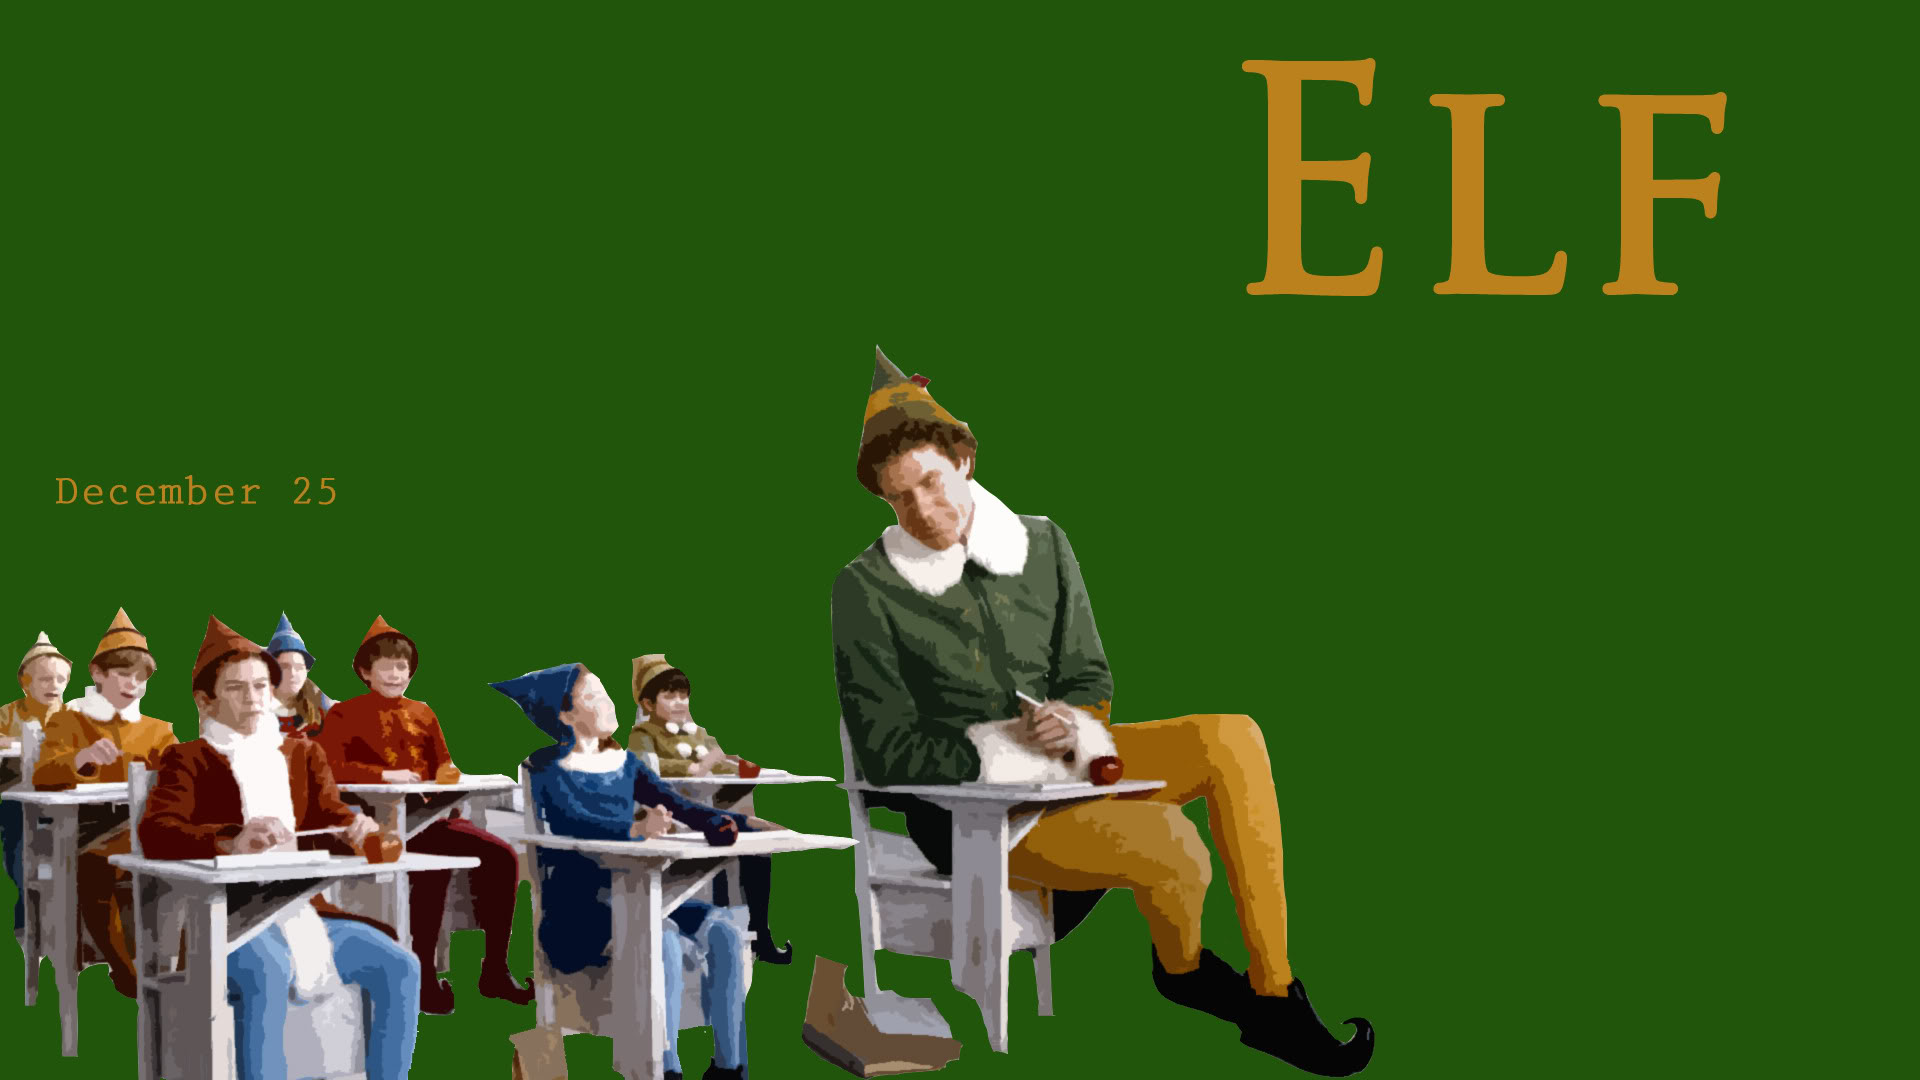 50+] Buddy The Elf Wallpaper - WallpaperSafari